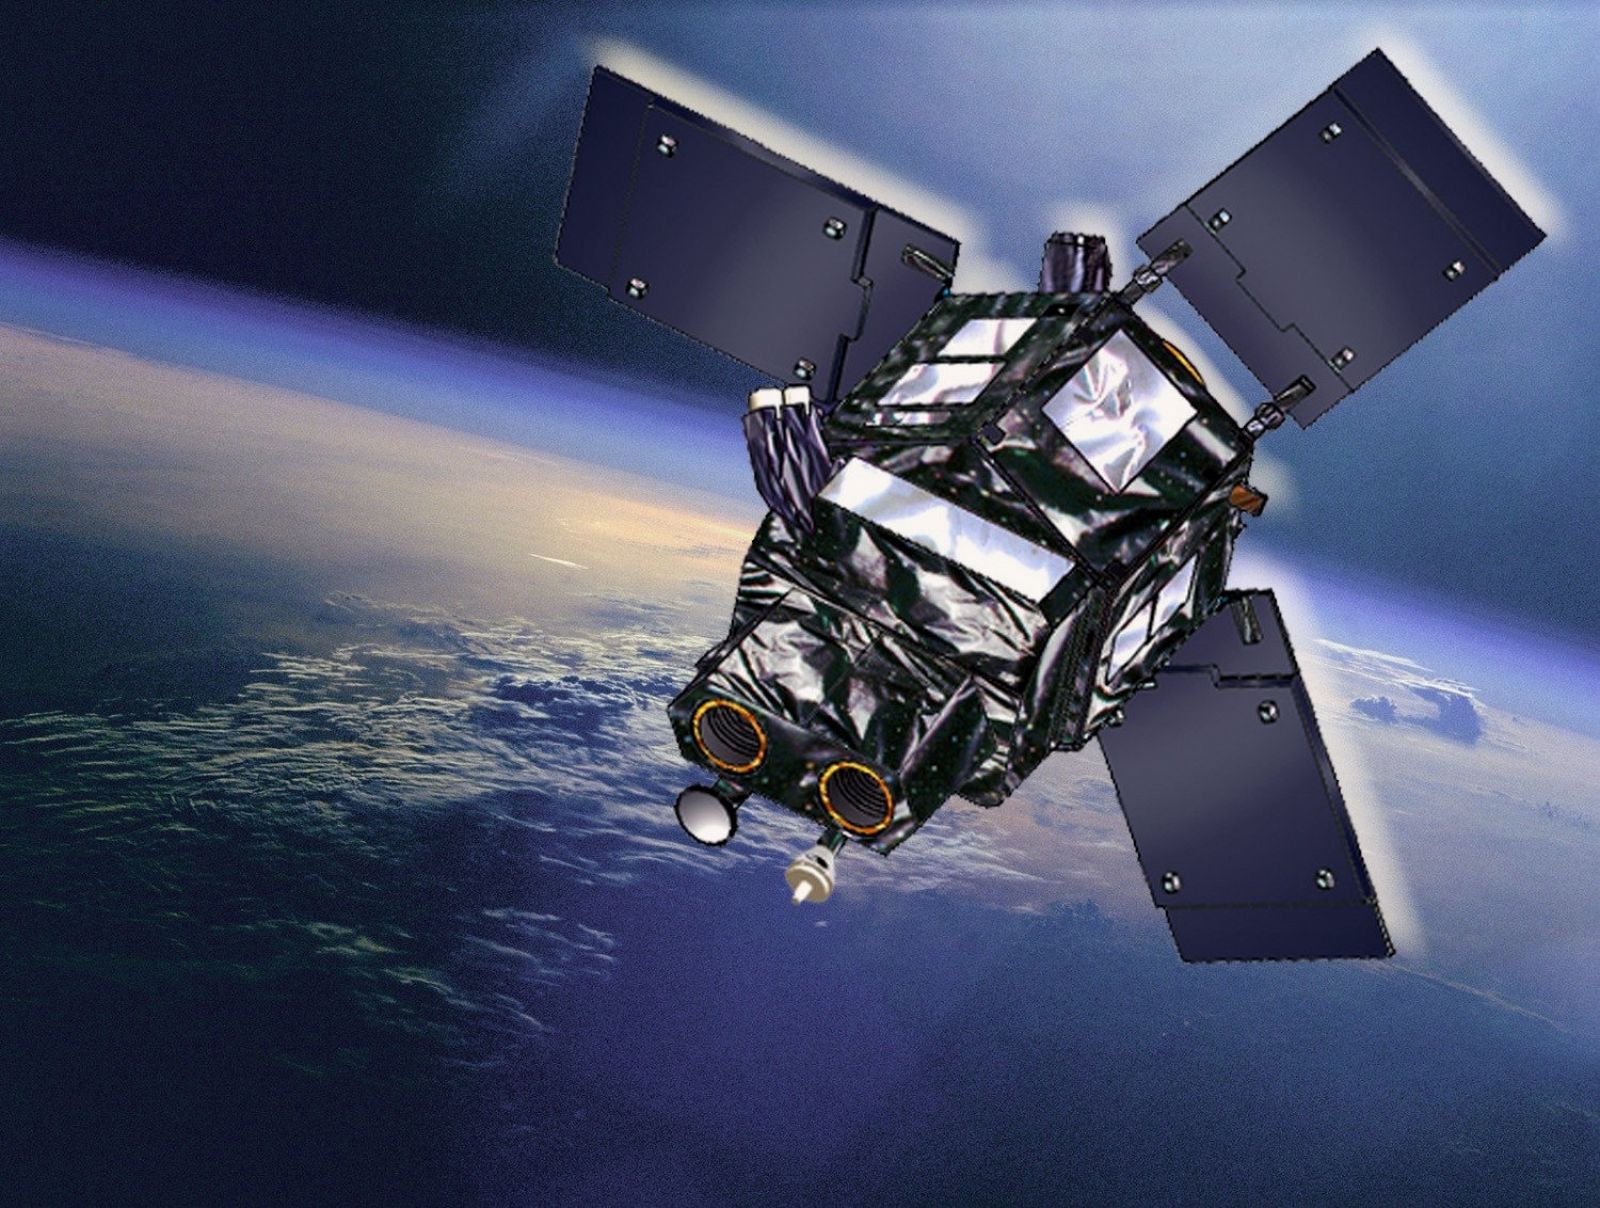 Ingenio, el primer satélite óptico español, orbitará la Tierra en 2014